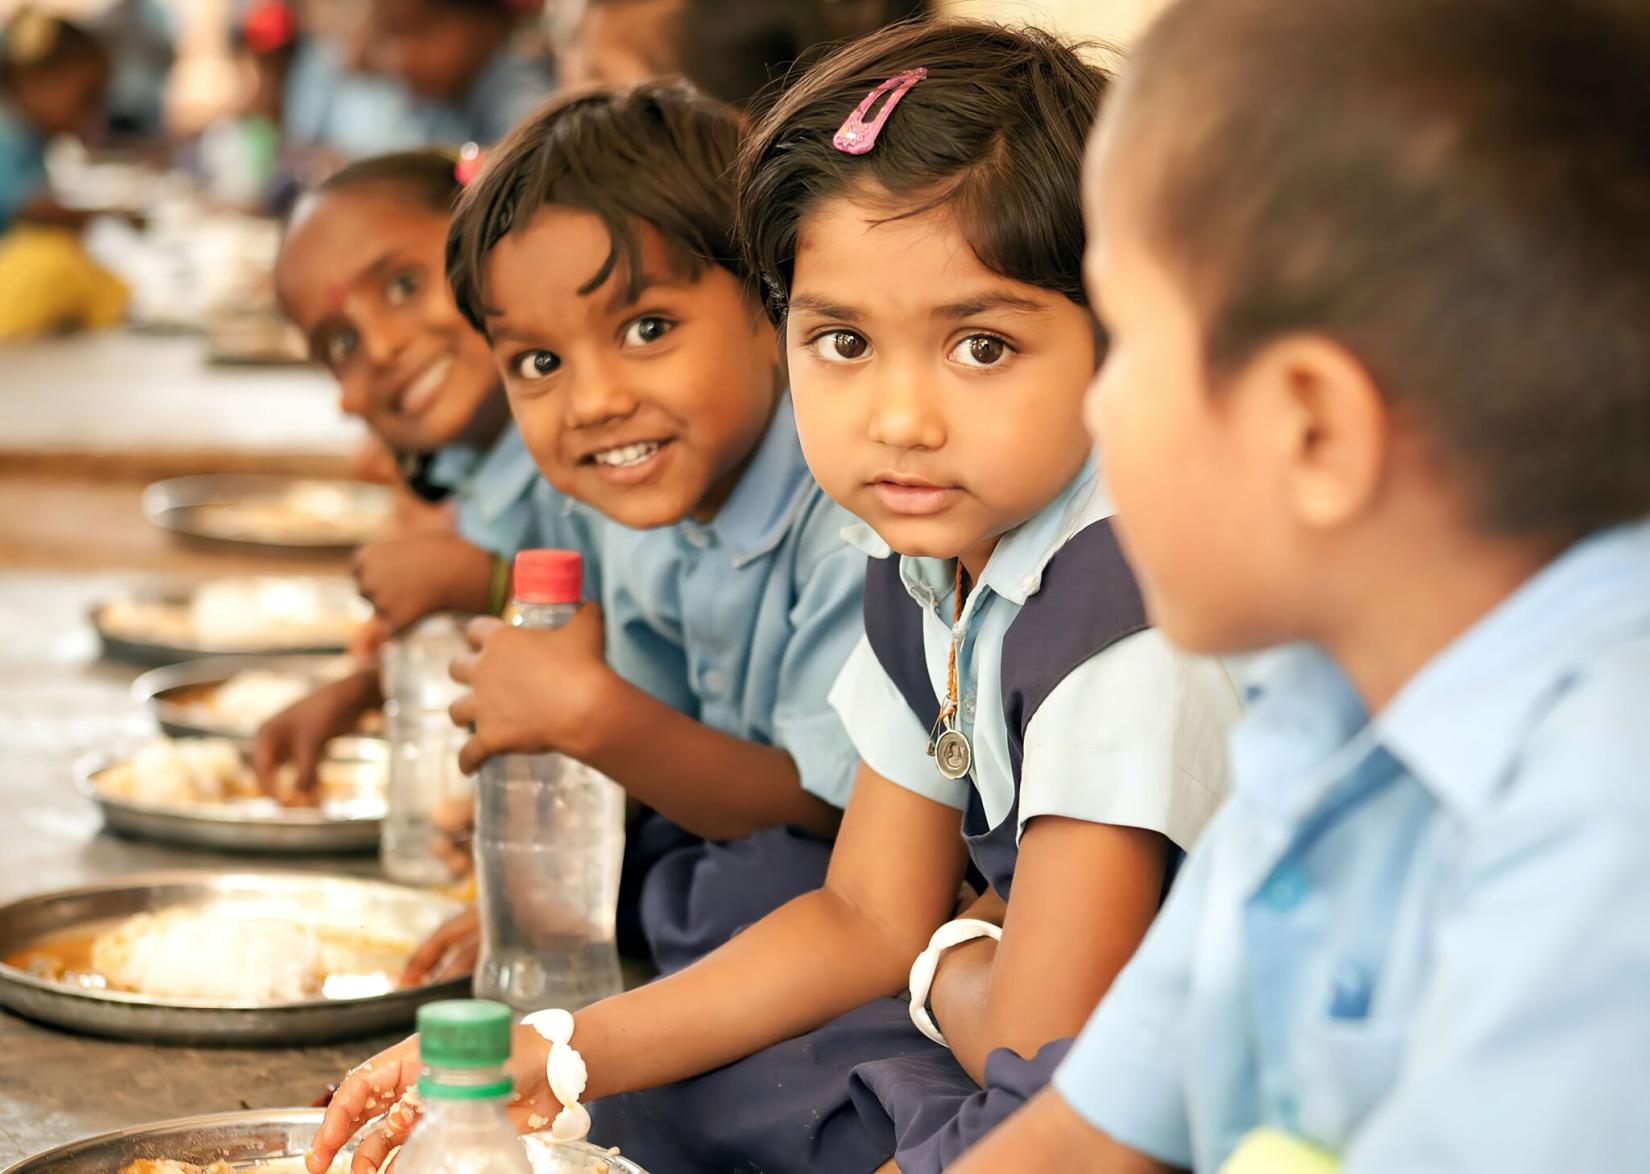 Quase 3/4 dos países que participaram do questionário disseram que seus programas de alimentação escolar podem agir como redes de segurança social, fornecendo alimento a crianças pobres ou vulneráveis.